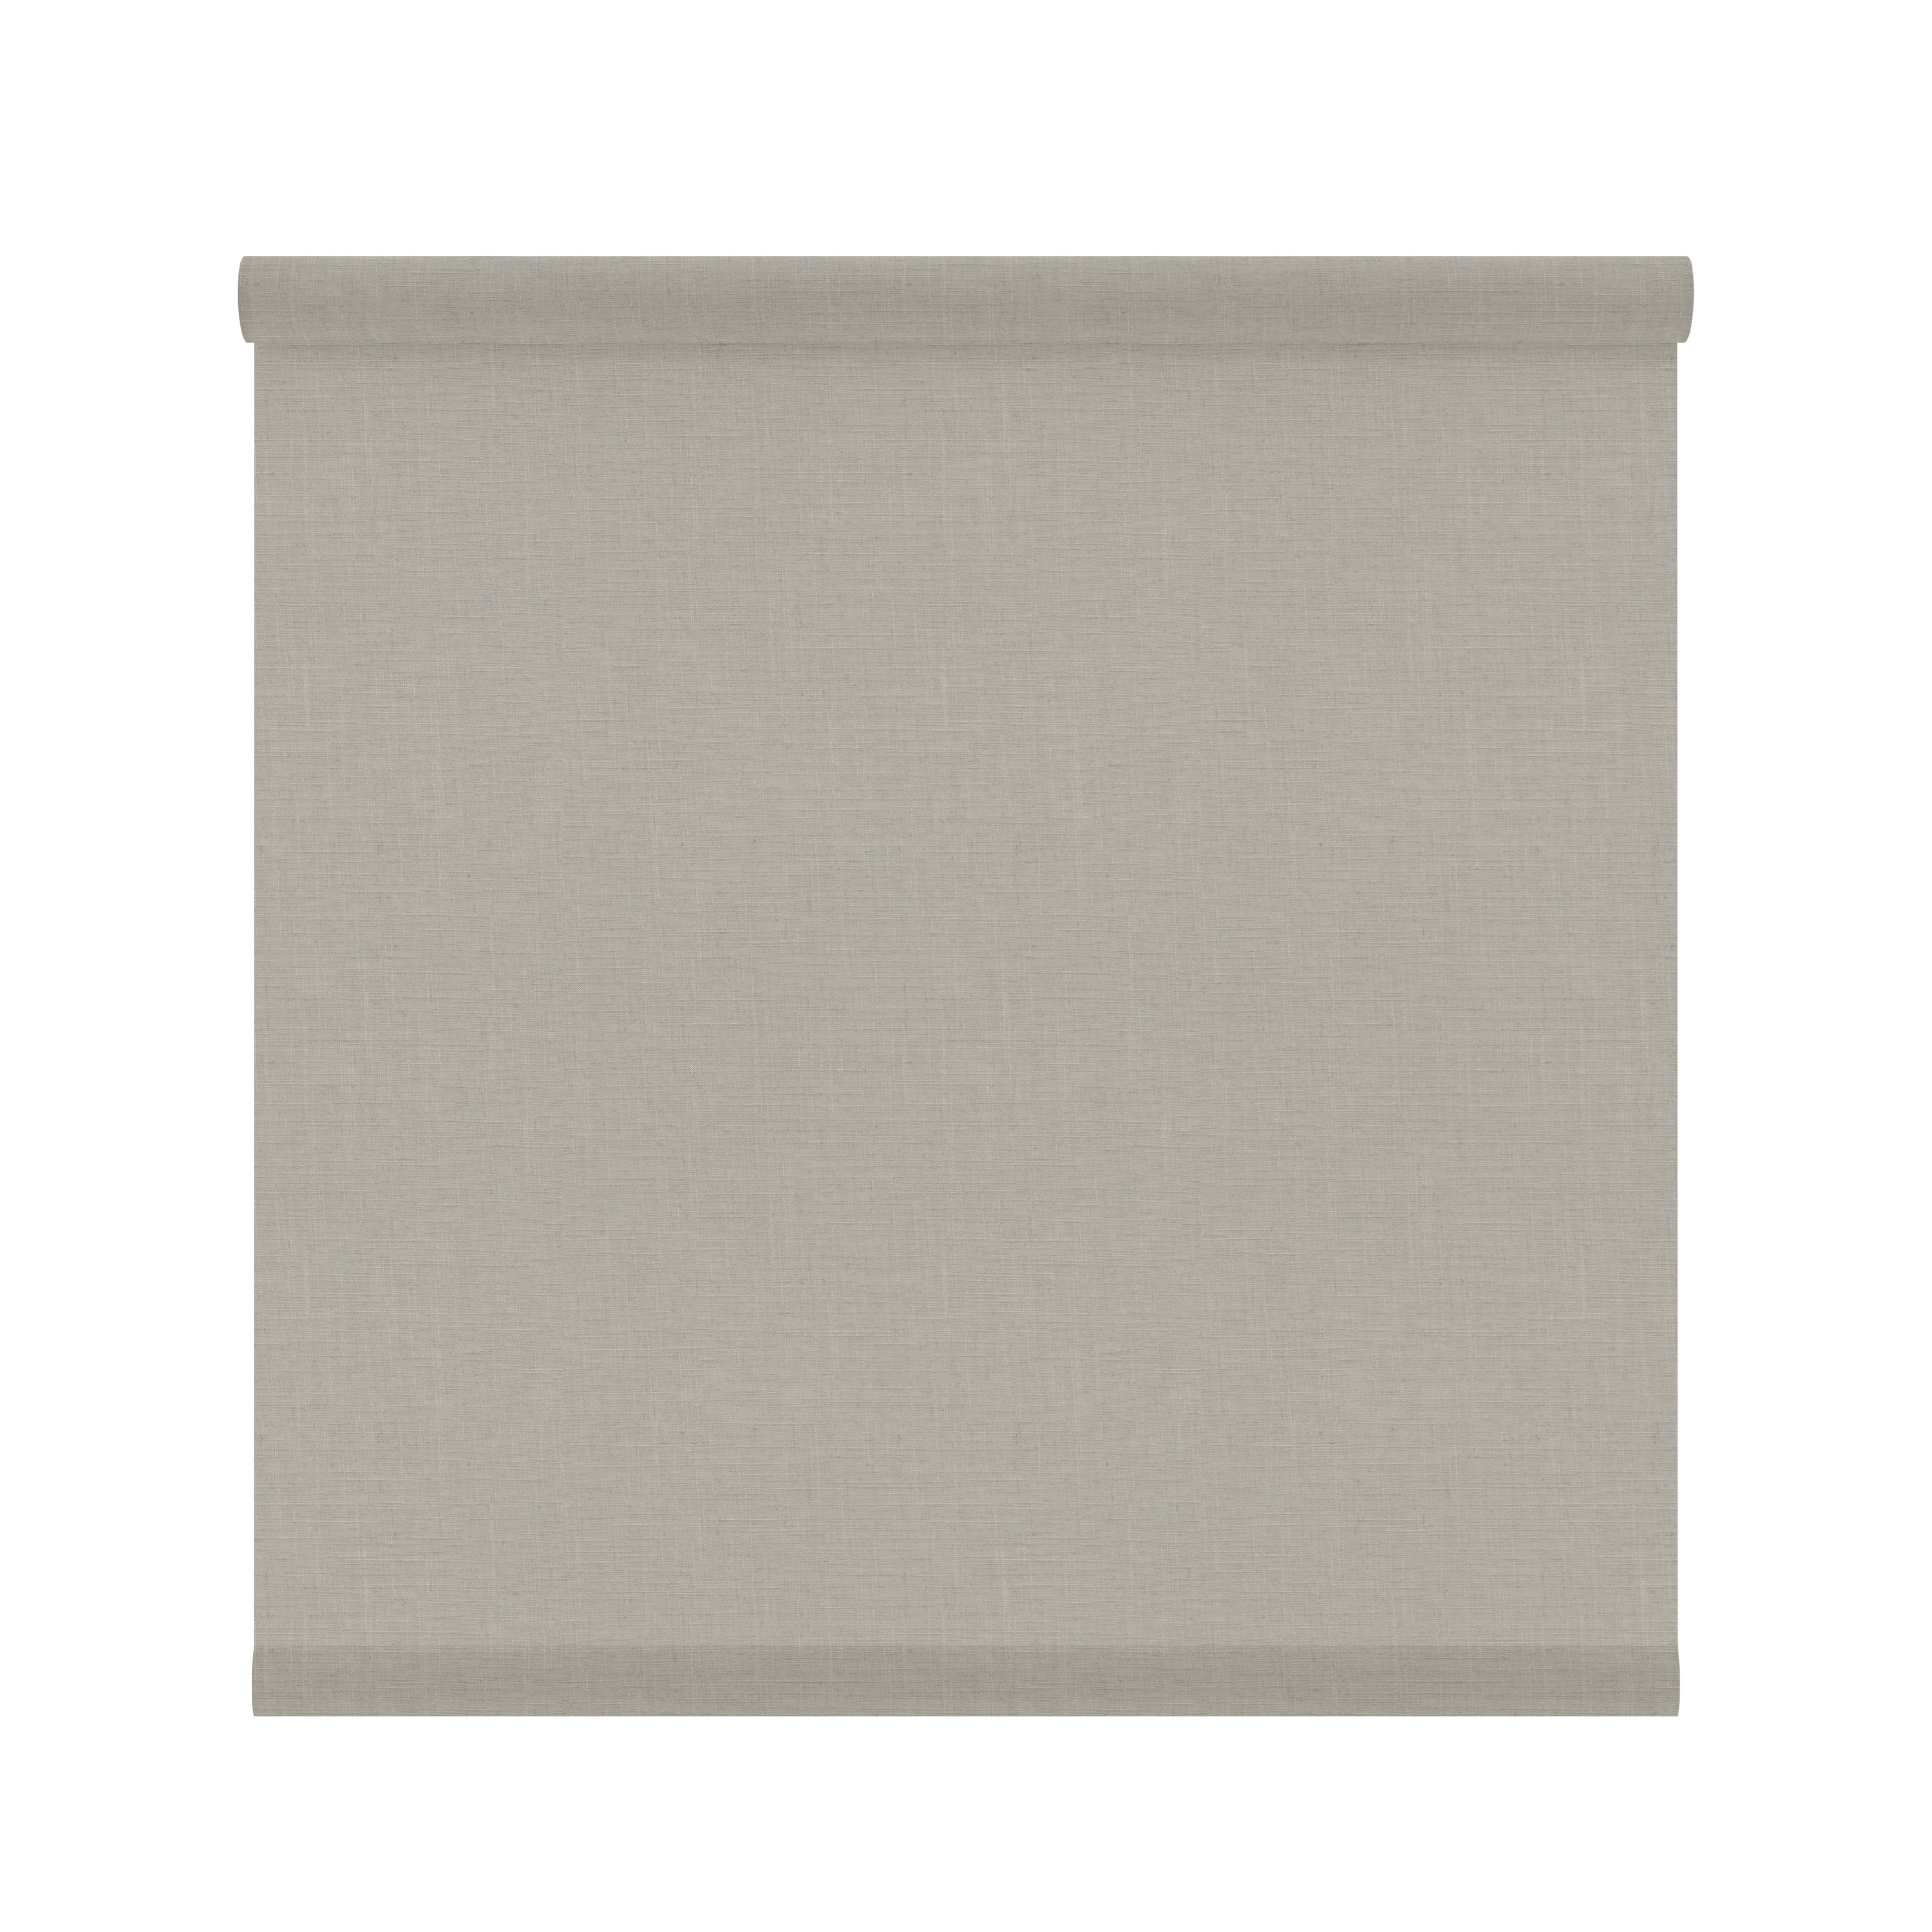 Tessuto per tende a rullo filtrante INSPIRE Brisbane beige 42 x 190 cm - 3